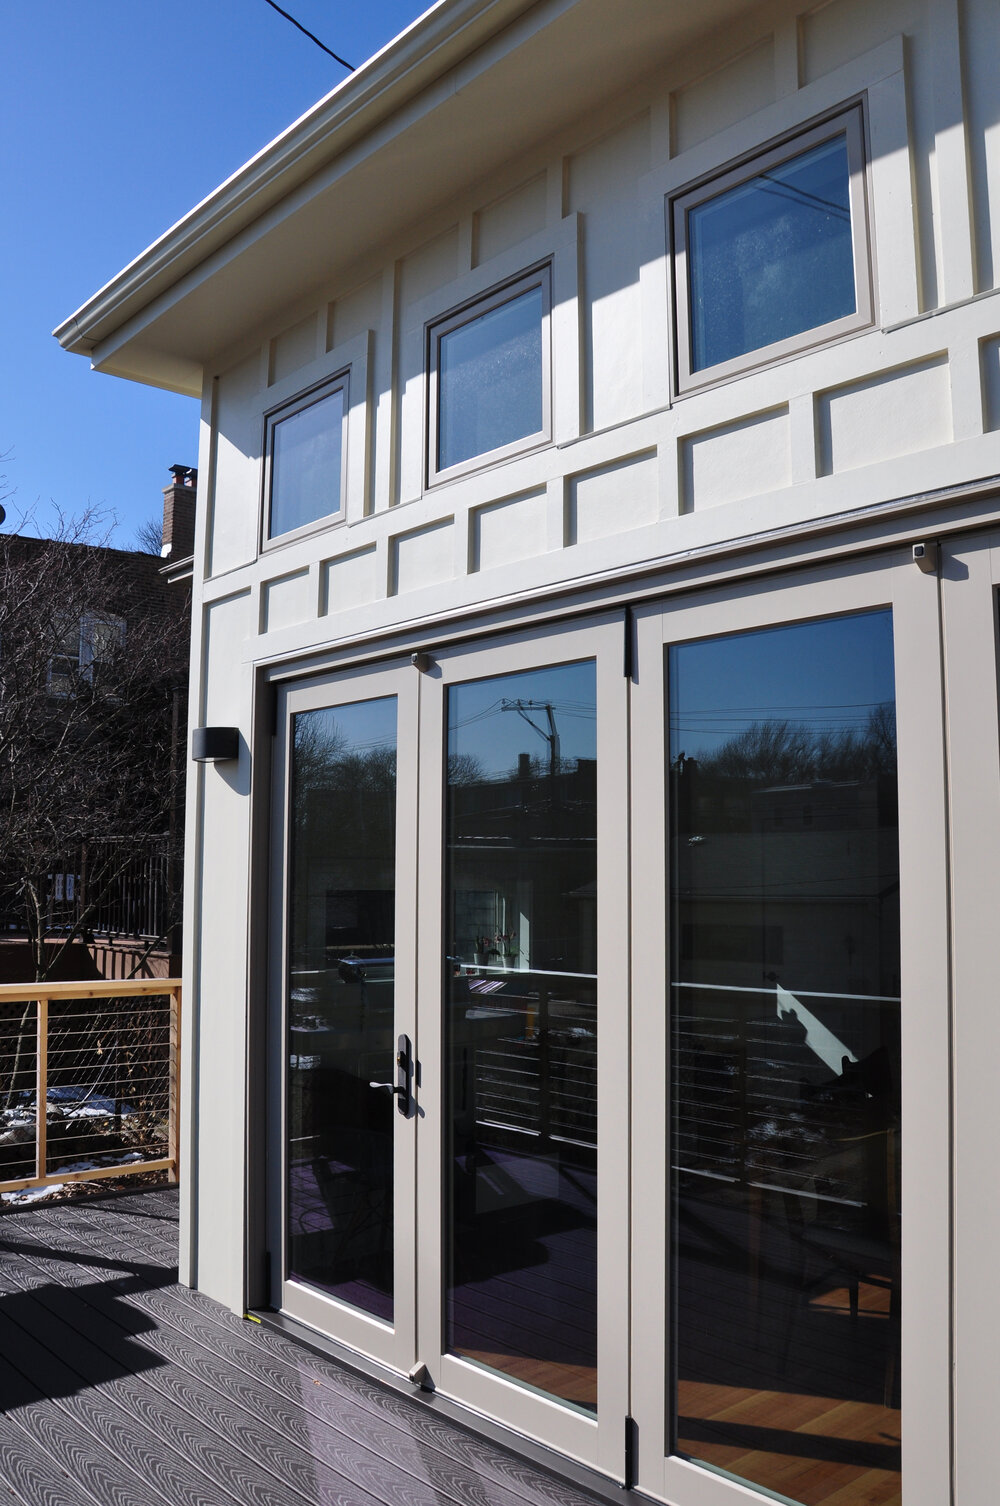 New porch and bi-fold doors